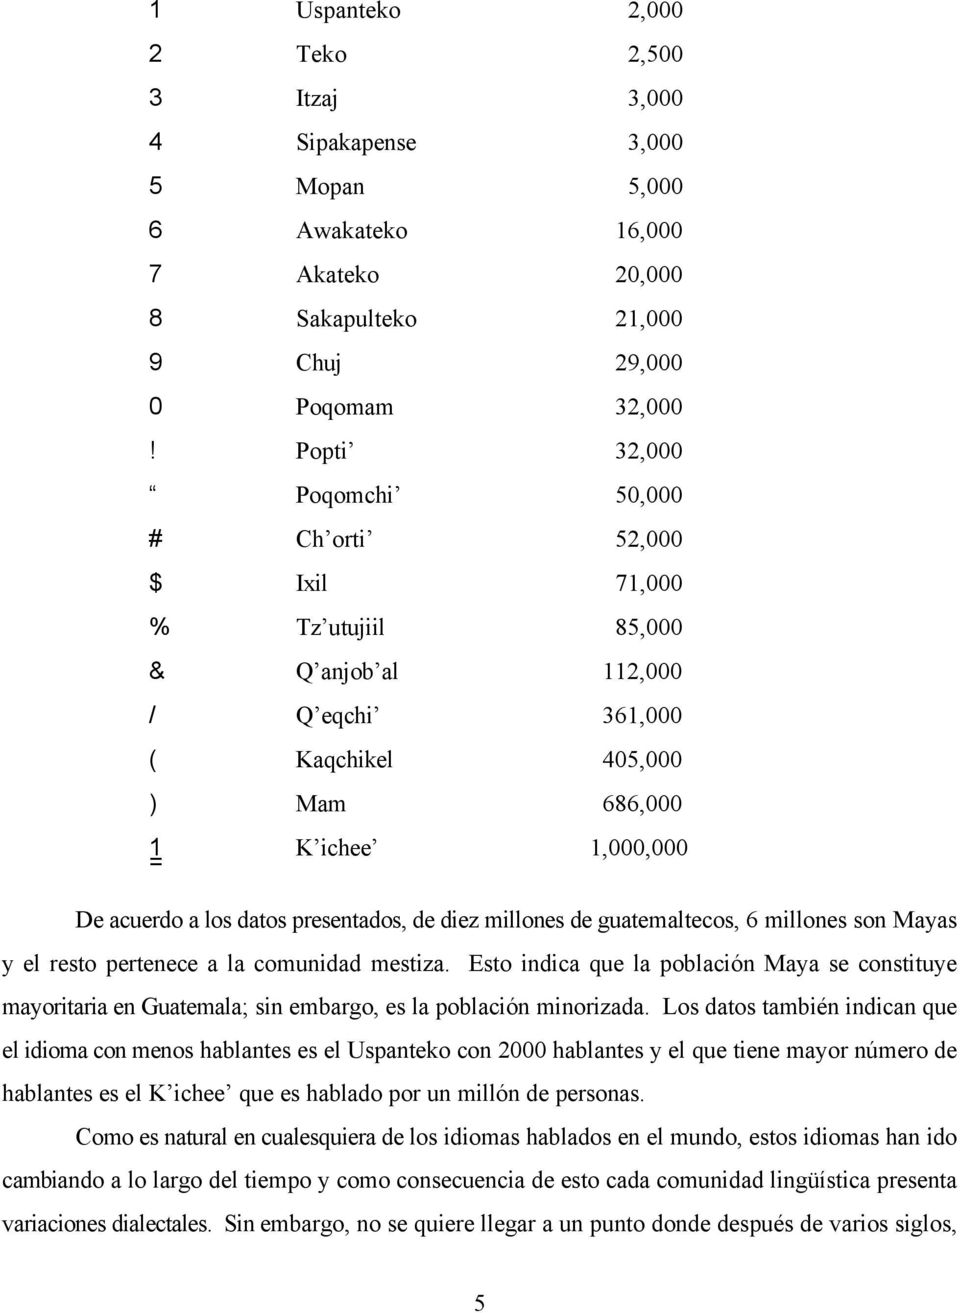 presentados, de diez millones de guatemaltecos, 6 millones son Mayas y el resto pertenece a la comunidad mestiza.